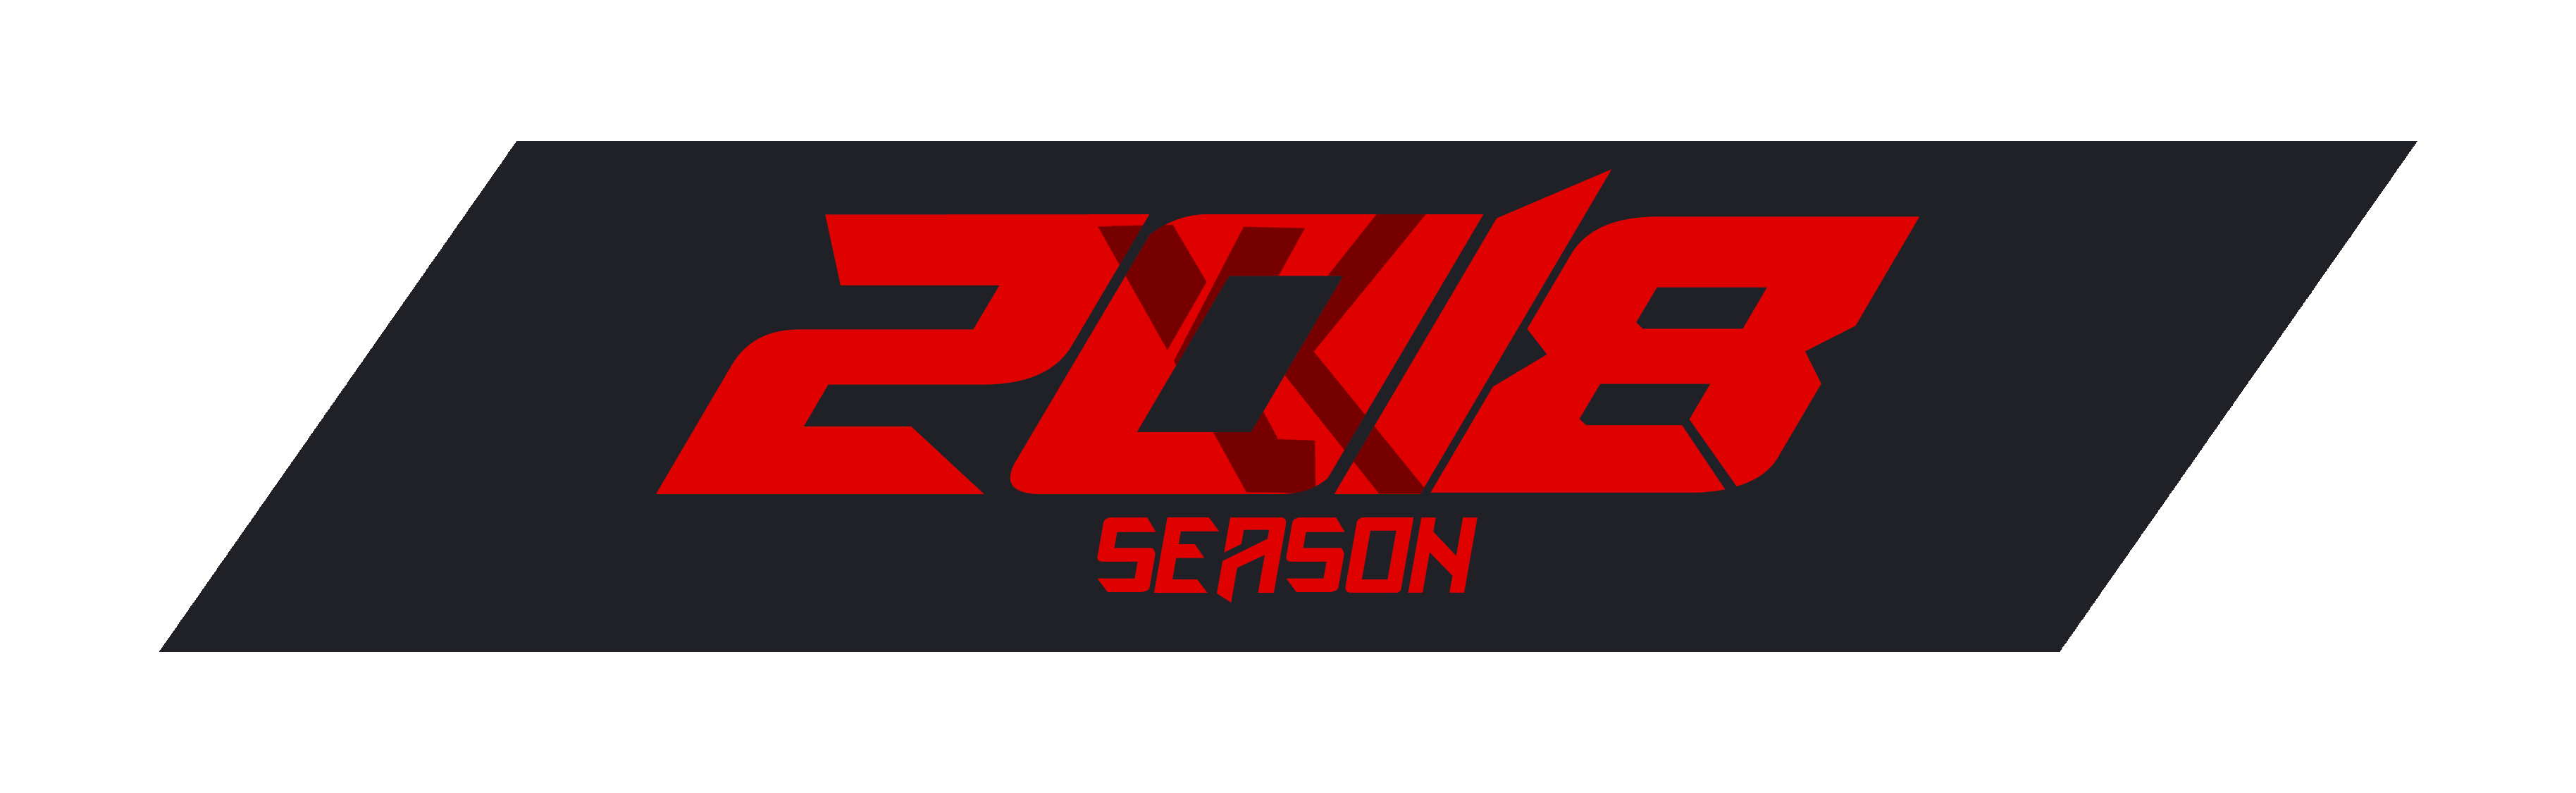 2018 Season Logo.png